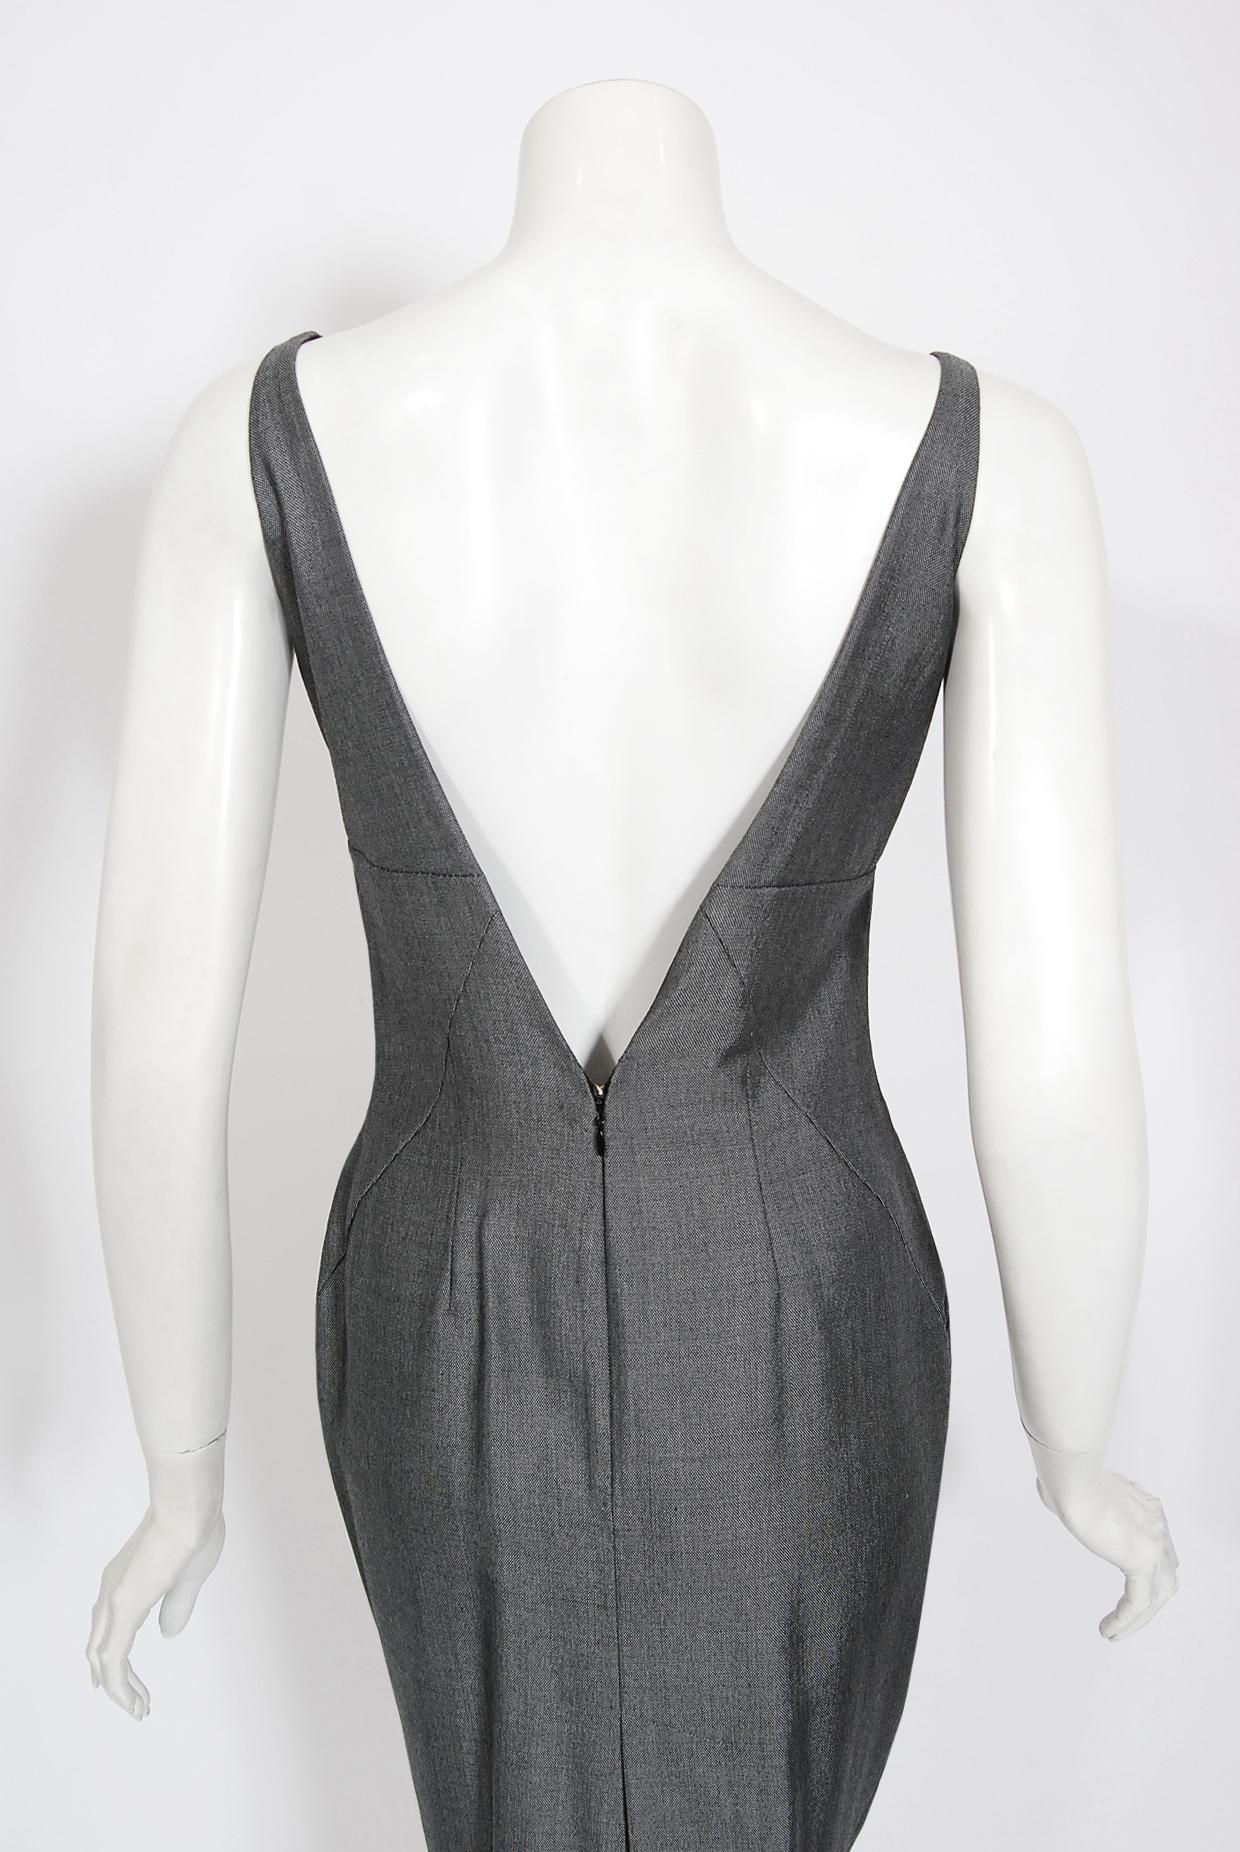 Vintage 1997 Alexander McQueen Gray Sharkskin Wool Hourglass Dress & Suit Jacket 8